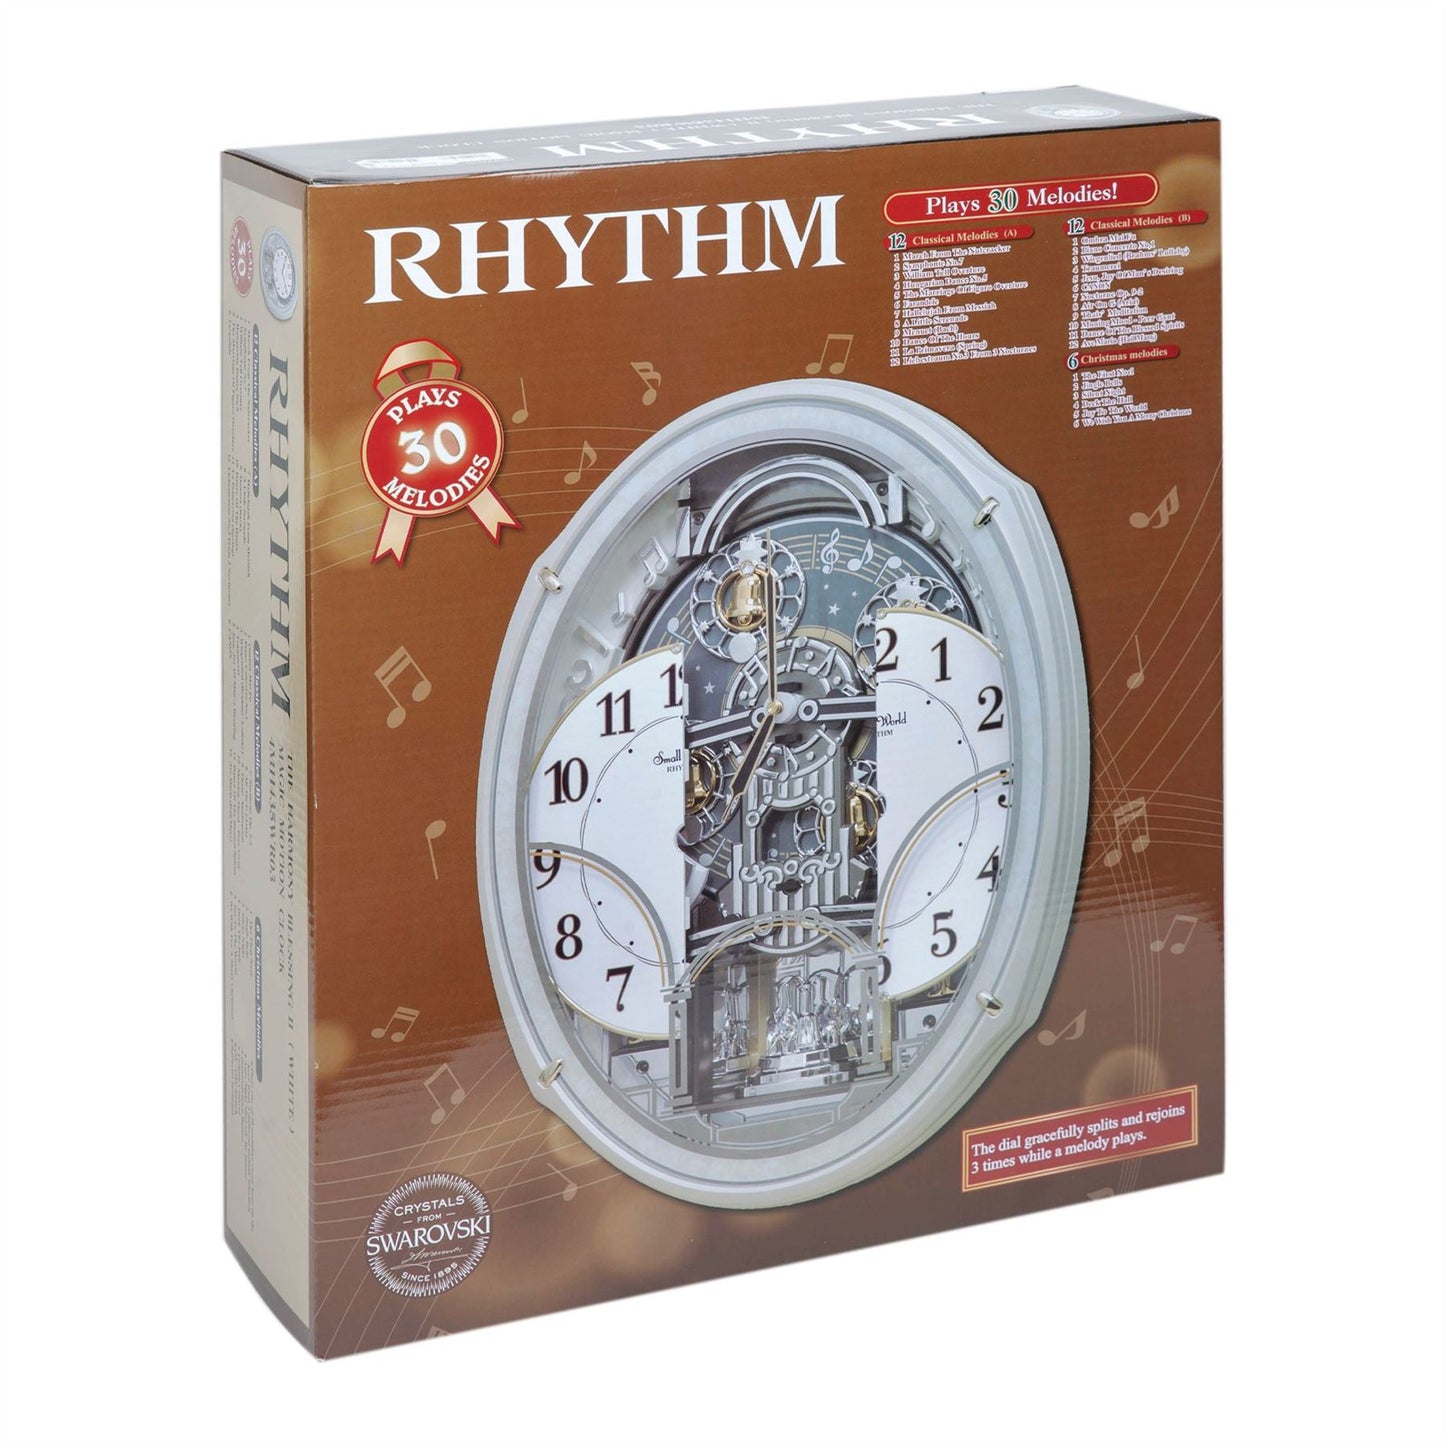 Rhythm Magic Motion Clock Crystal Decoration Silver Finish